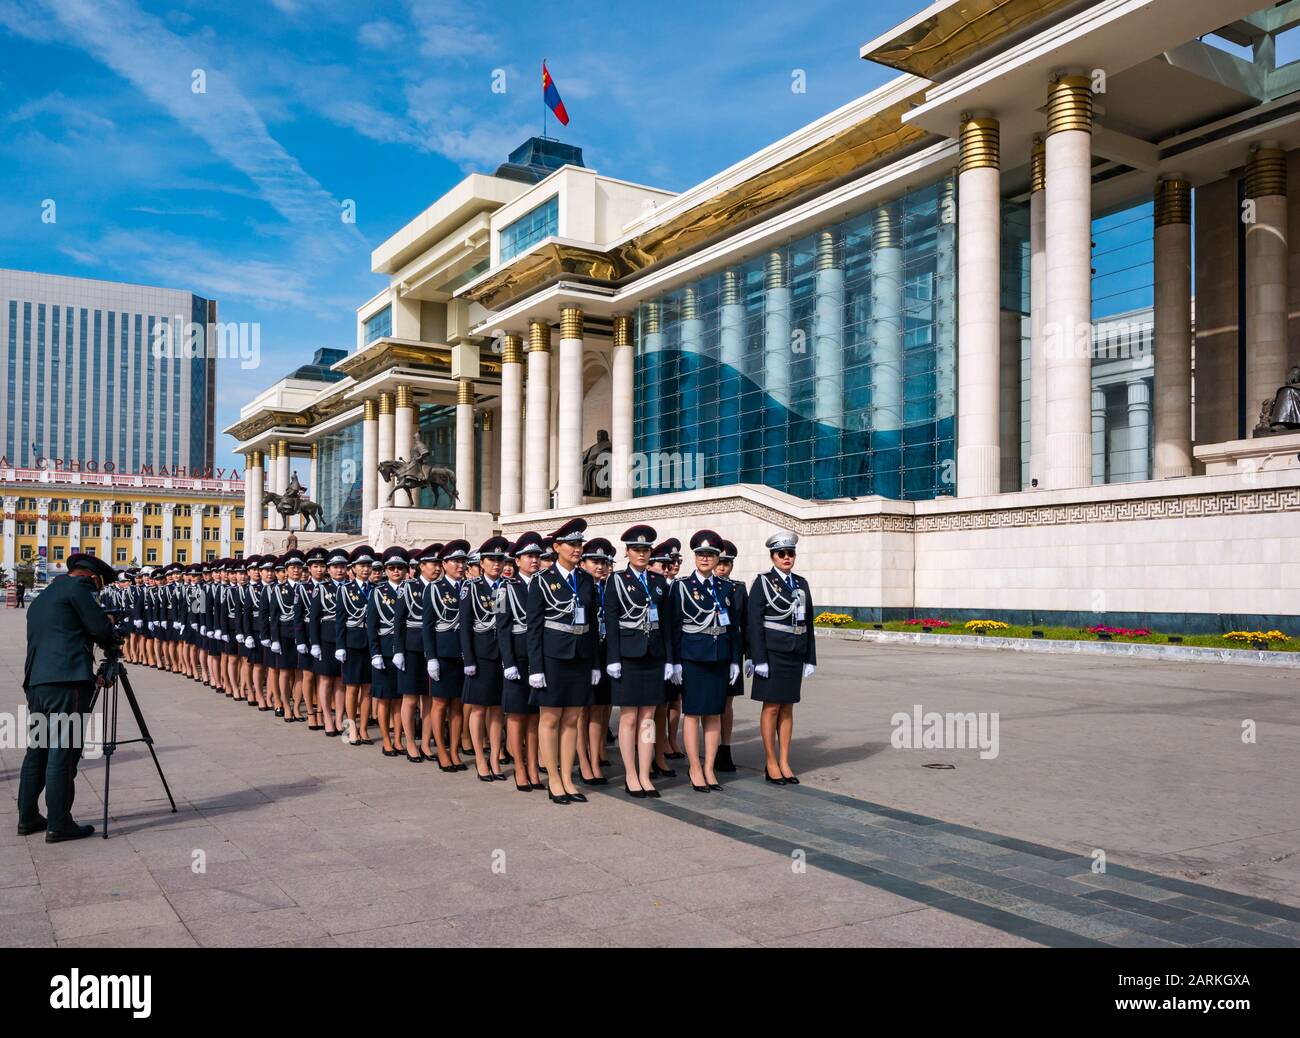 Des officiers de police ont défilé de cérémonie au Palais du Gouvernement, place Sükhbaatar, Oulan-Bator, Mongolie Banque D'Images